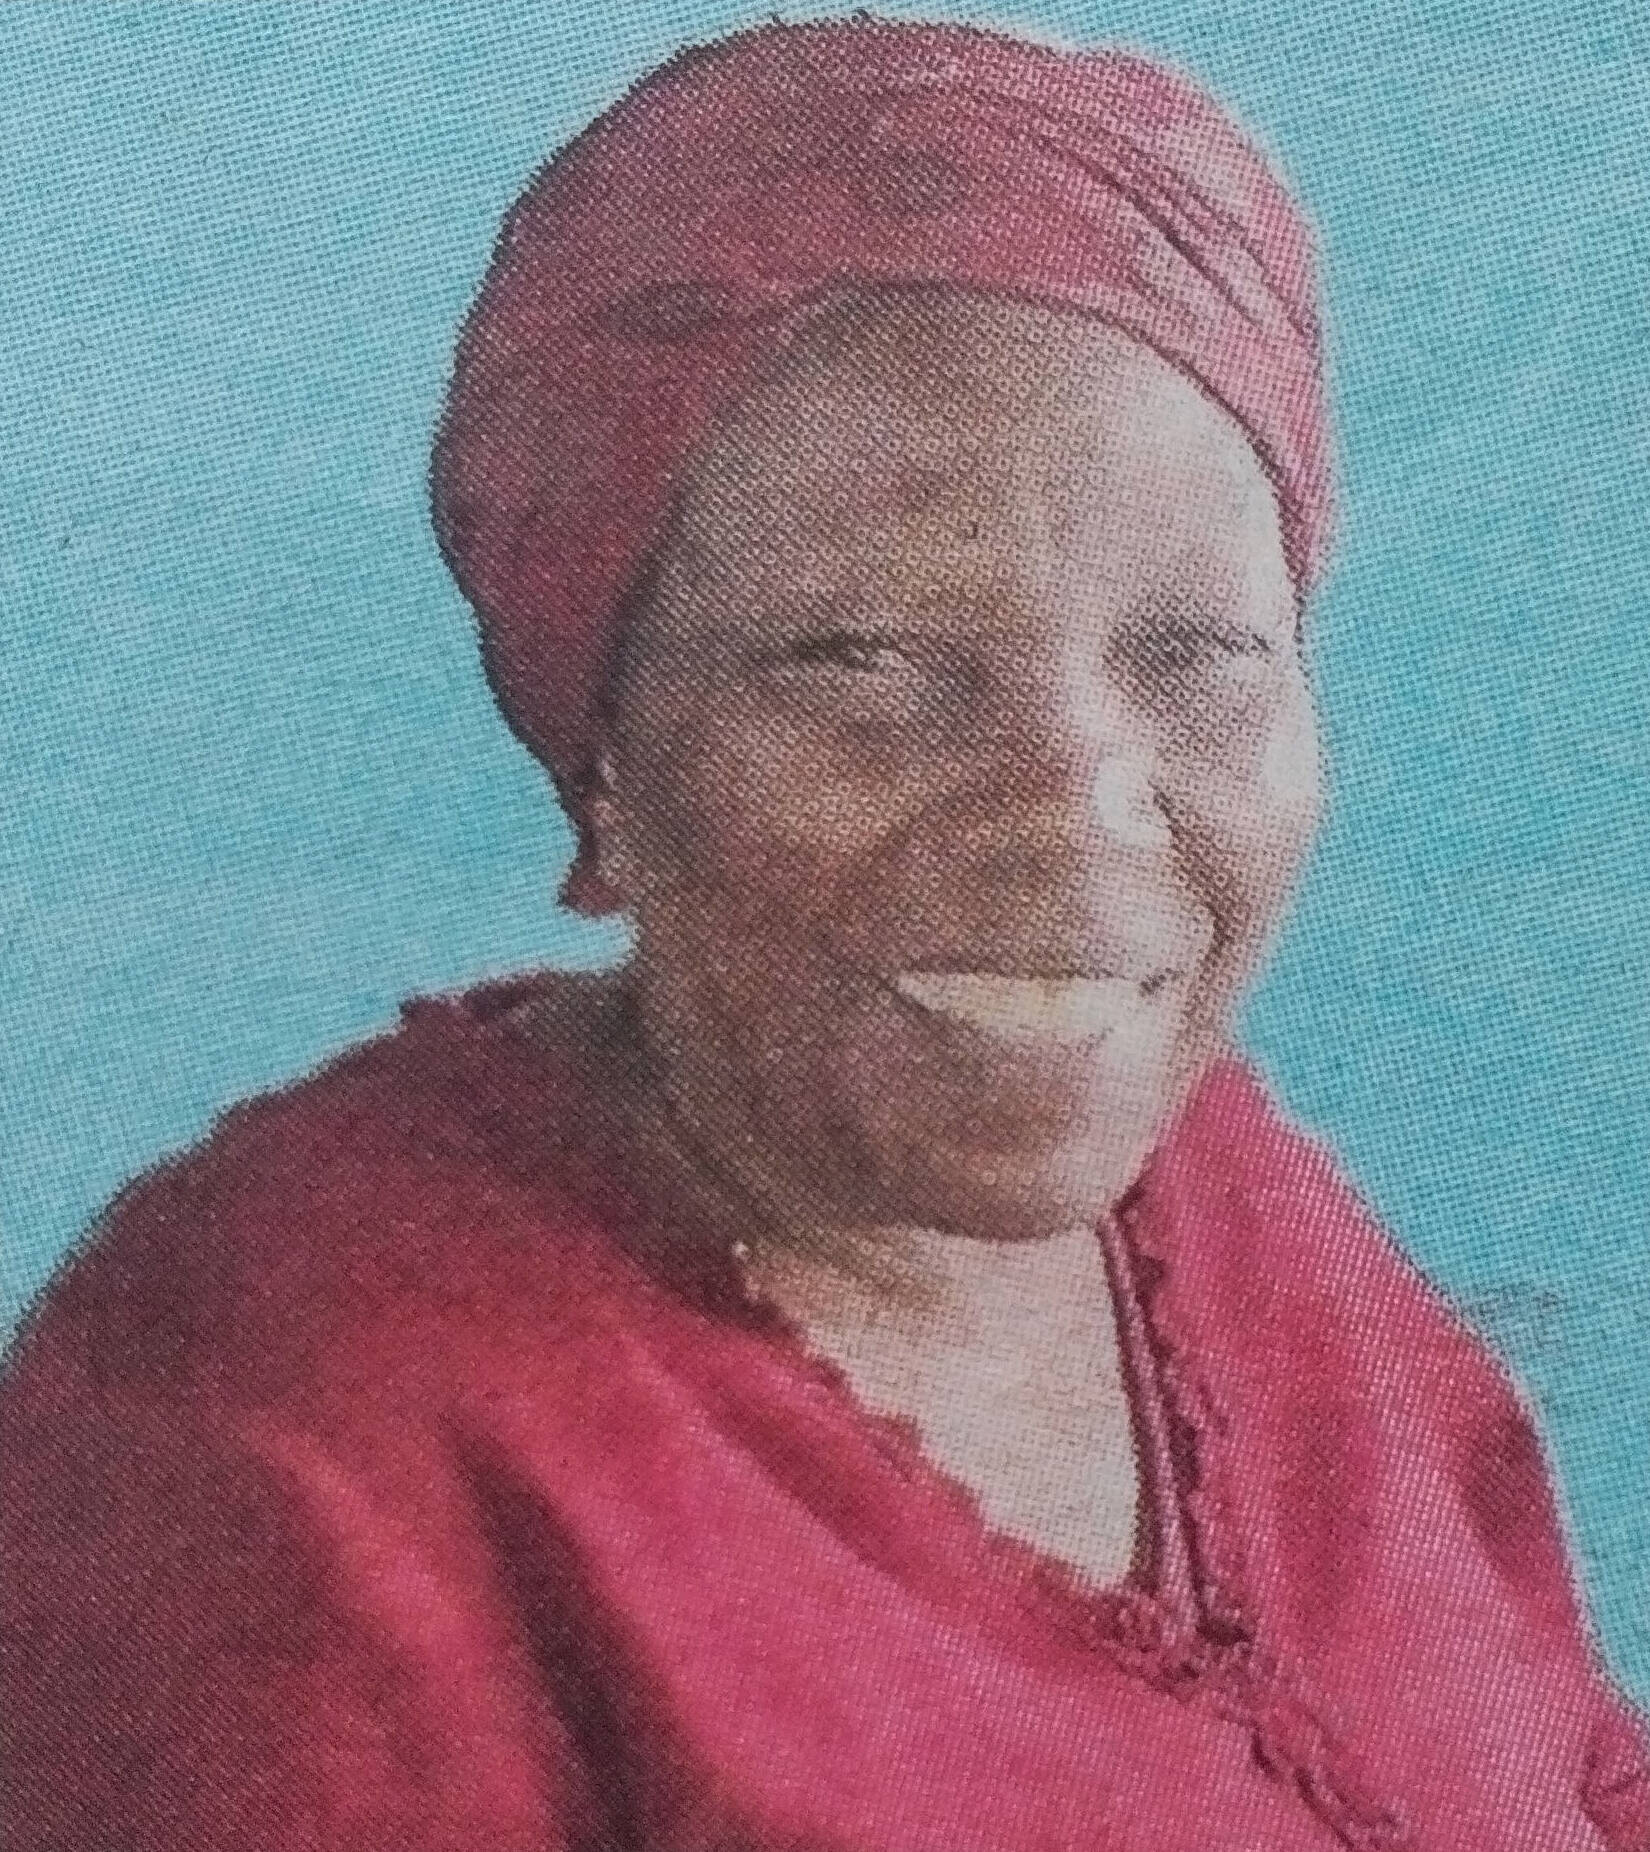 Obituary Image of Lucy Nereah Wanjiku Wanyoike